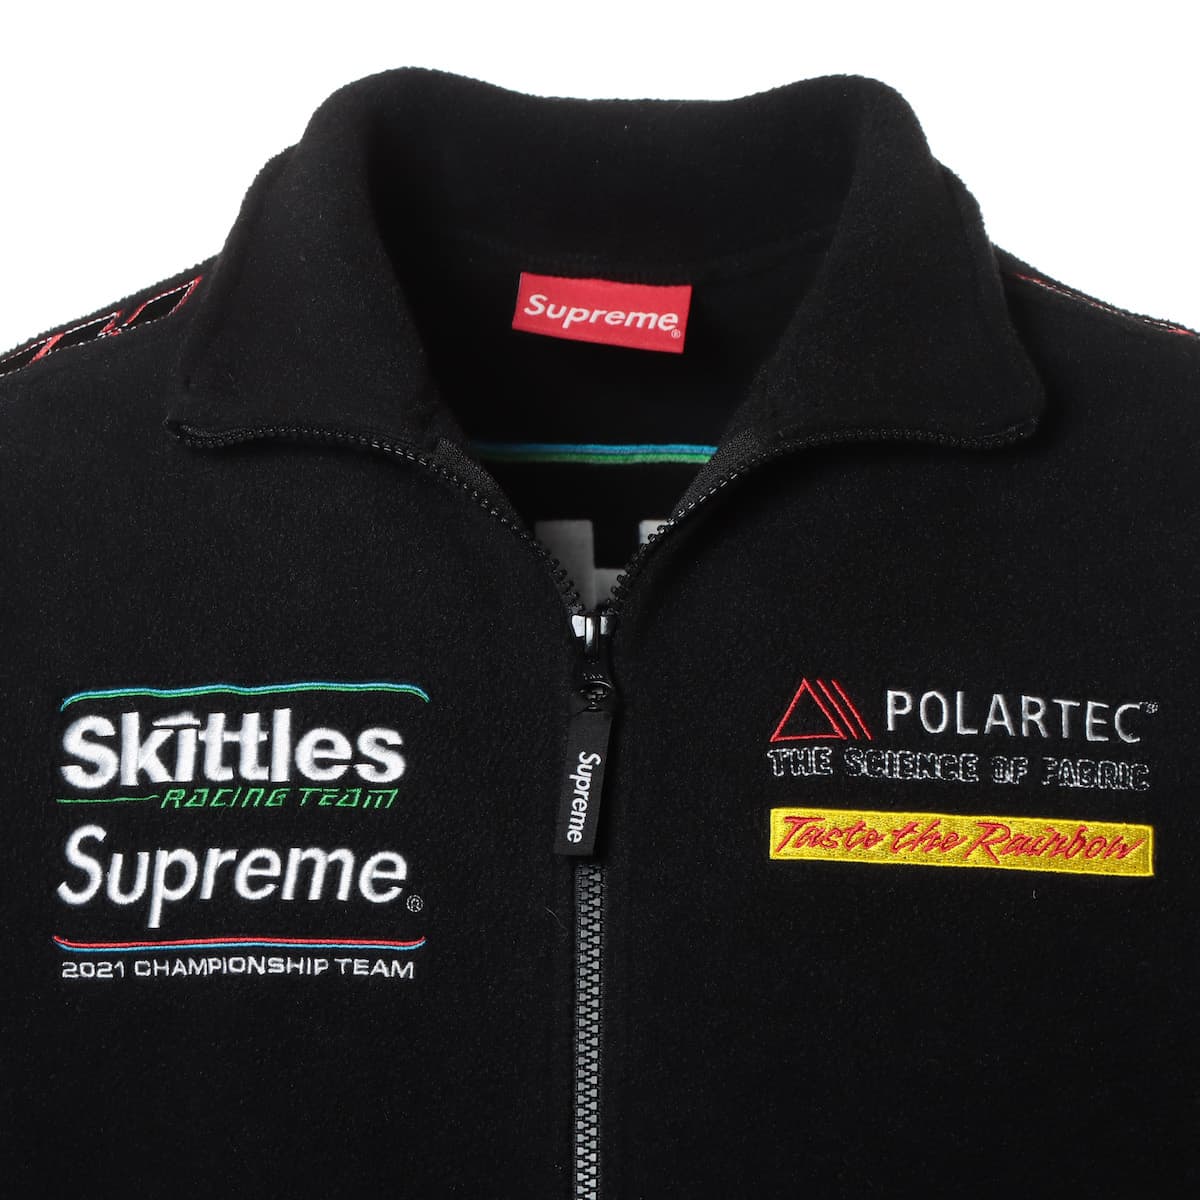 シュプリーム 21AW ポリエステル ジャケット S メンズ ブラック  Skittles Polartec Jacket